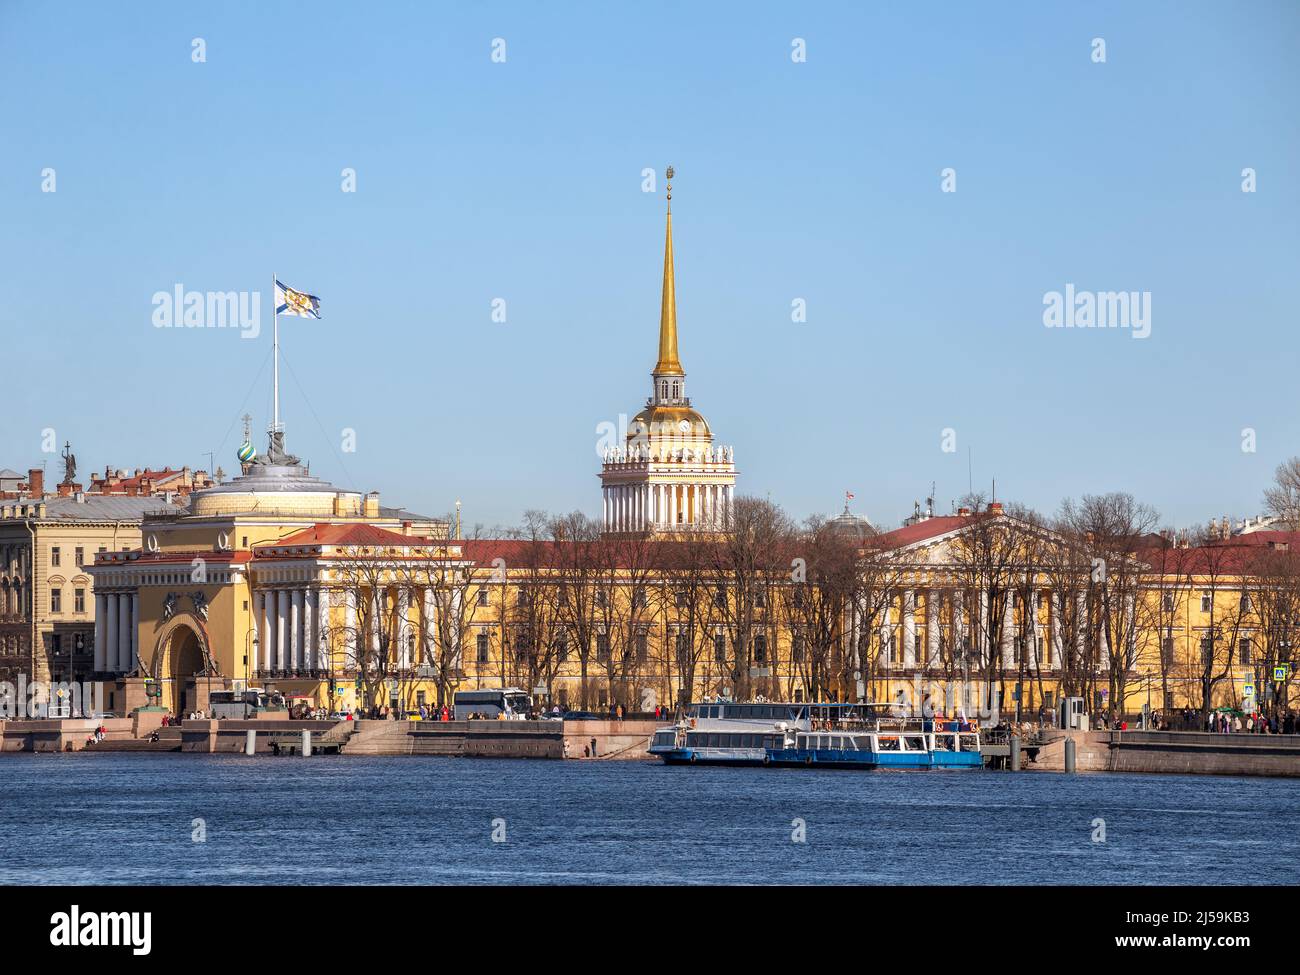 Bâtiment de l'Amirauté sur la rive de l'Admiralteyskaya, Saint-Pétersbourg, Russie Banque D'Images